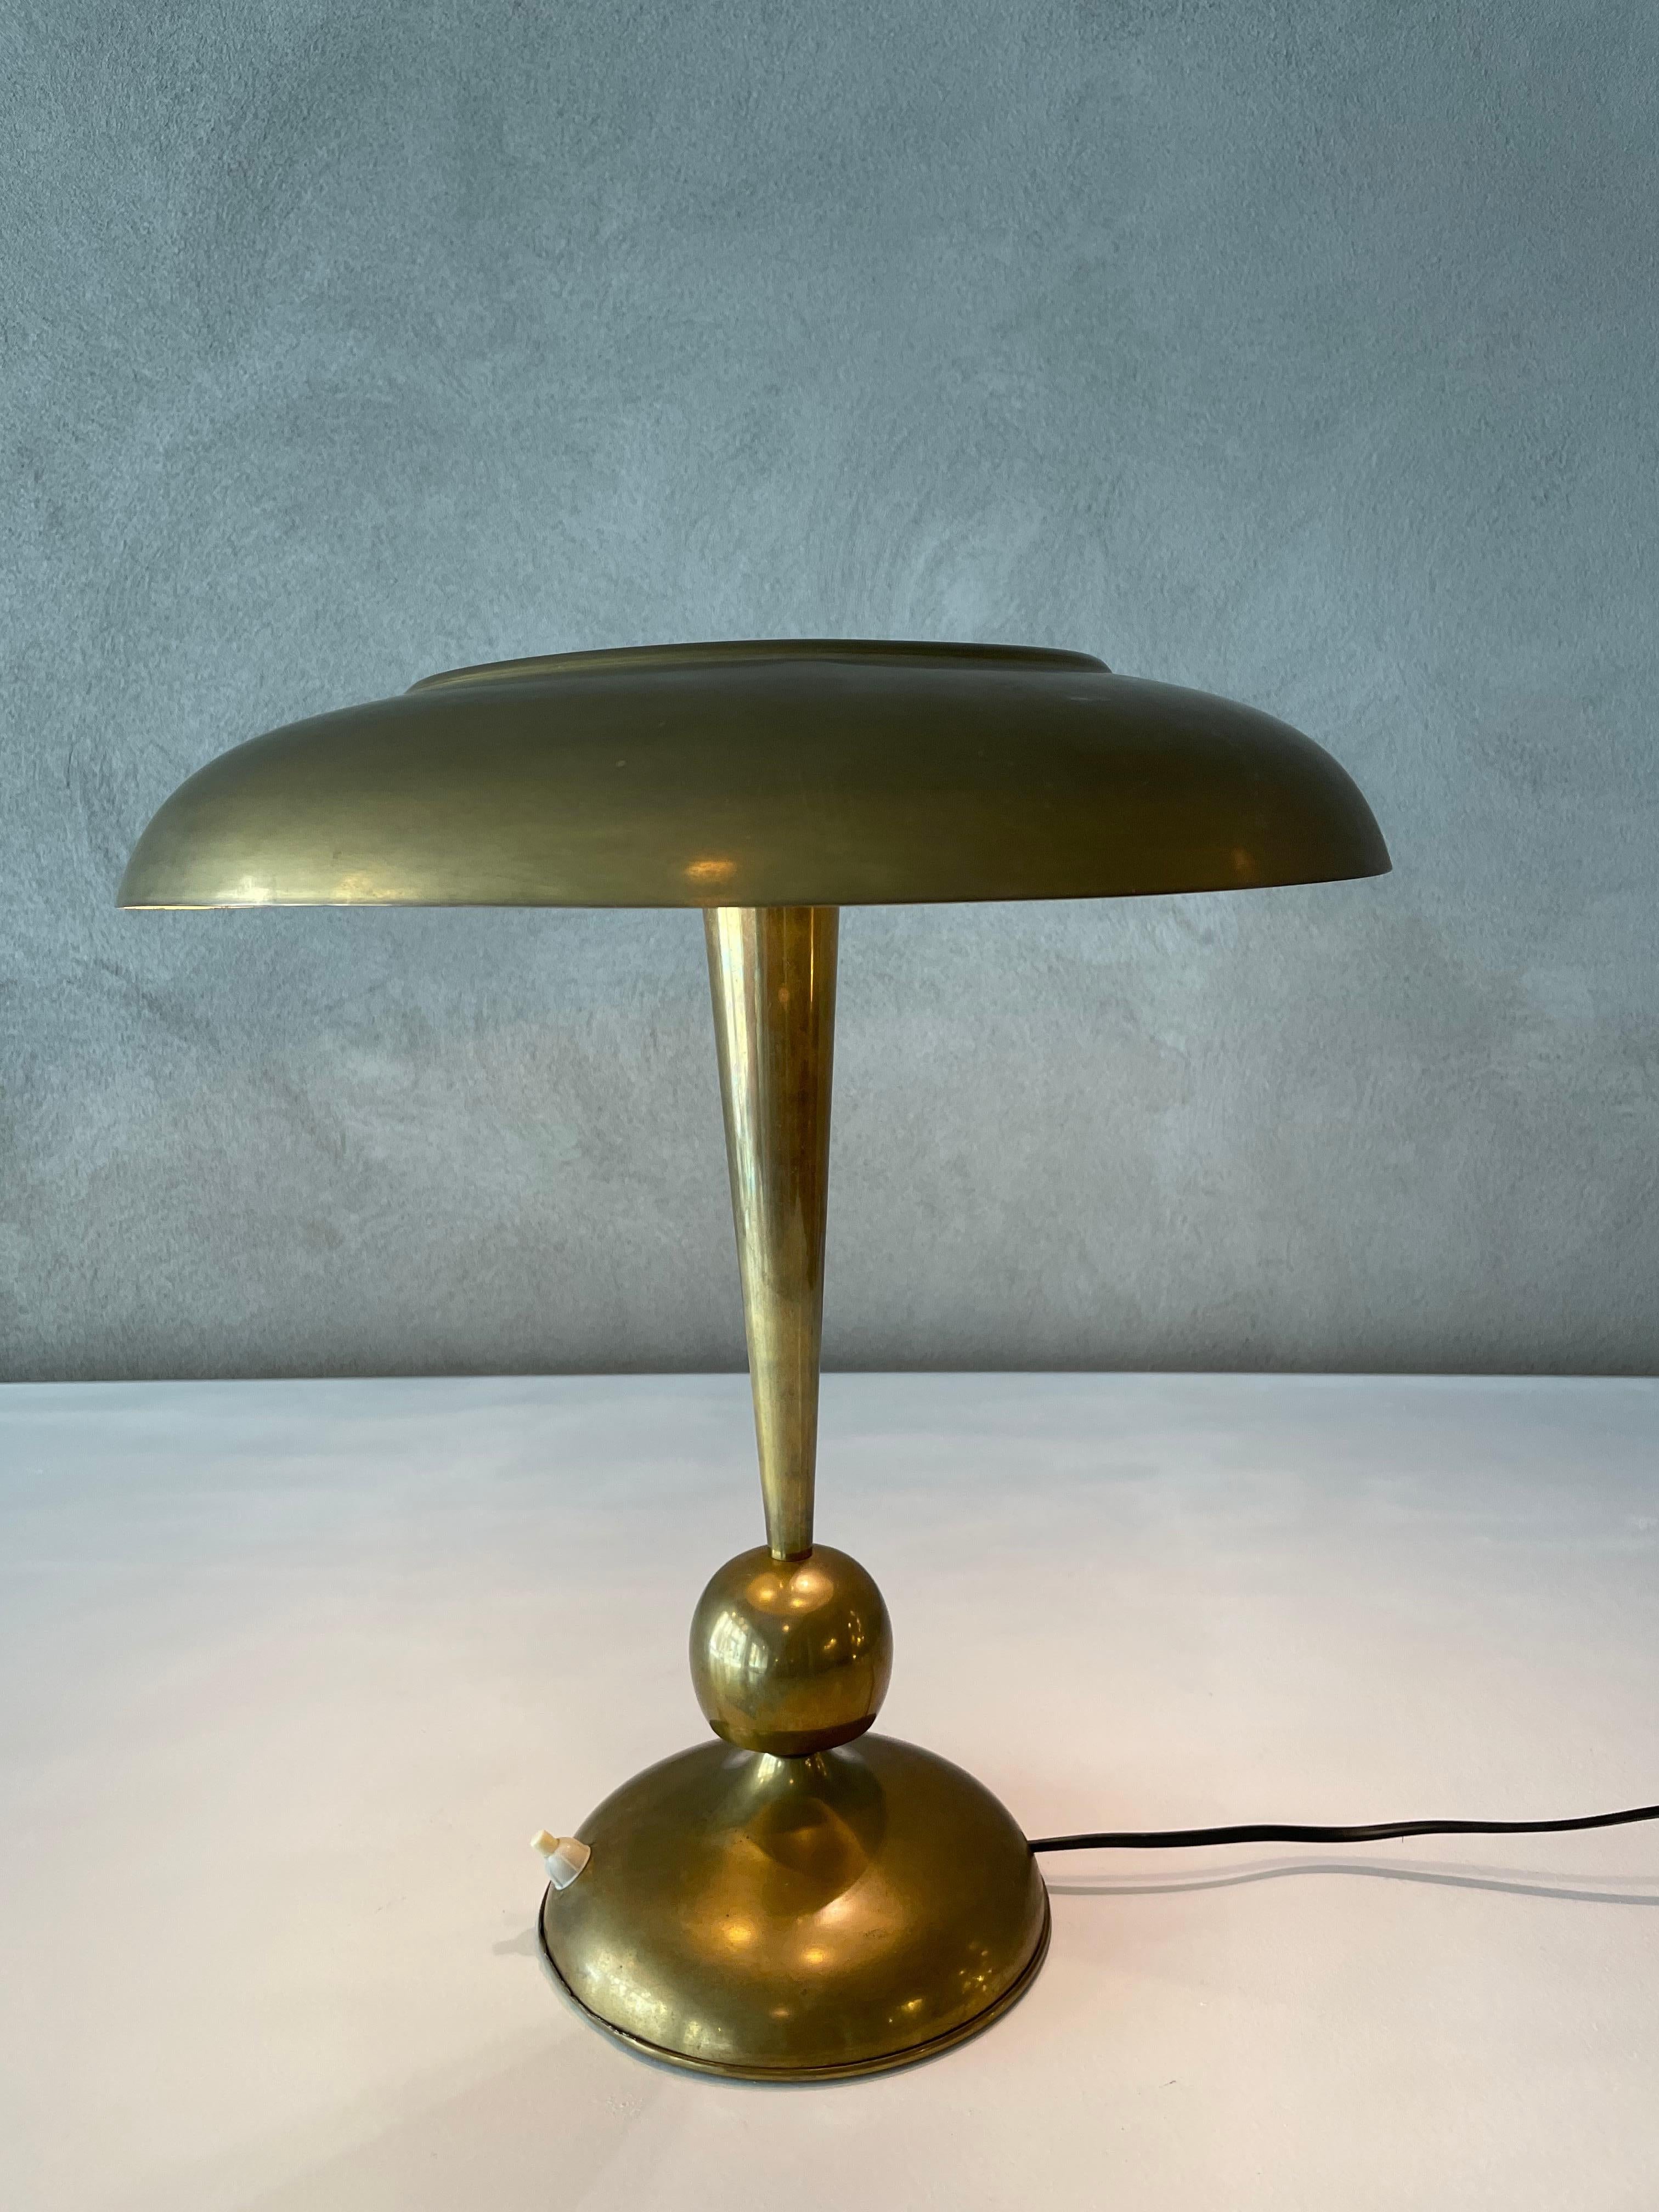 Mod. 143 lampe de table conçue par Oscar Torlasco, fabriquée par Lumi Italie, années 1960.
Laiton, verre dépoli avec ampoules triples.
Excellente patine vintage.

Références : Giuliana Gramigna, 